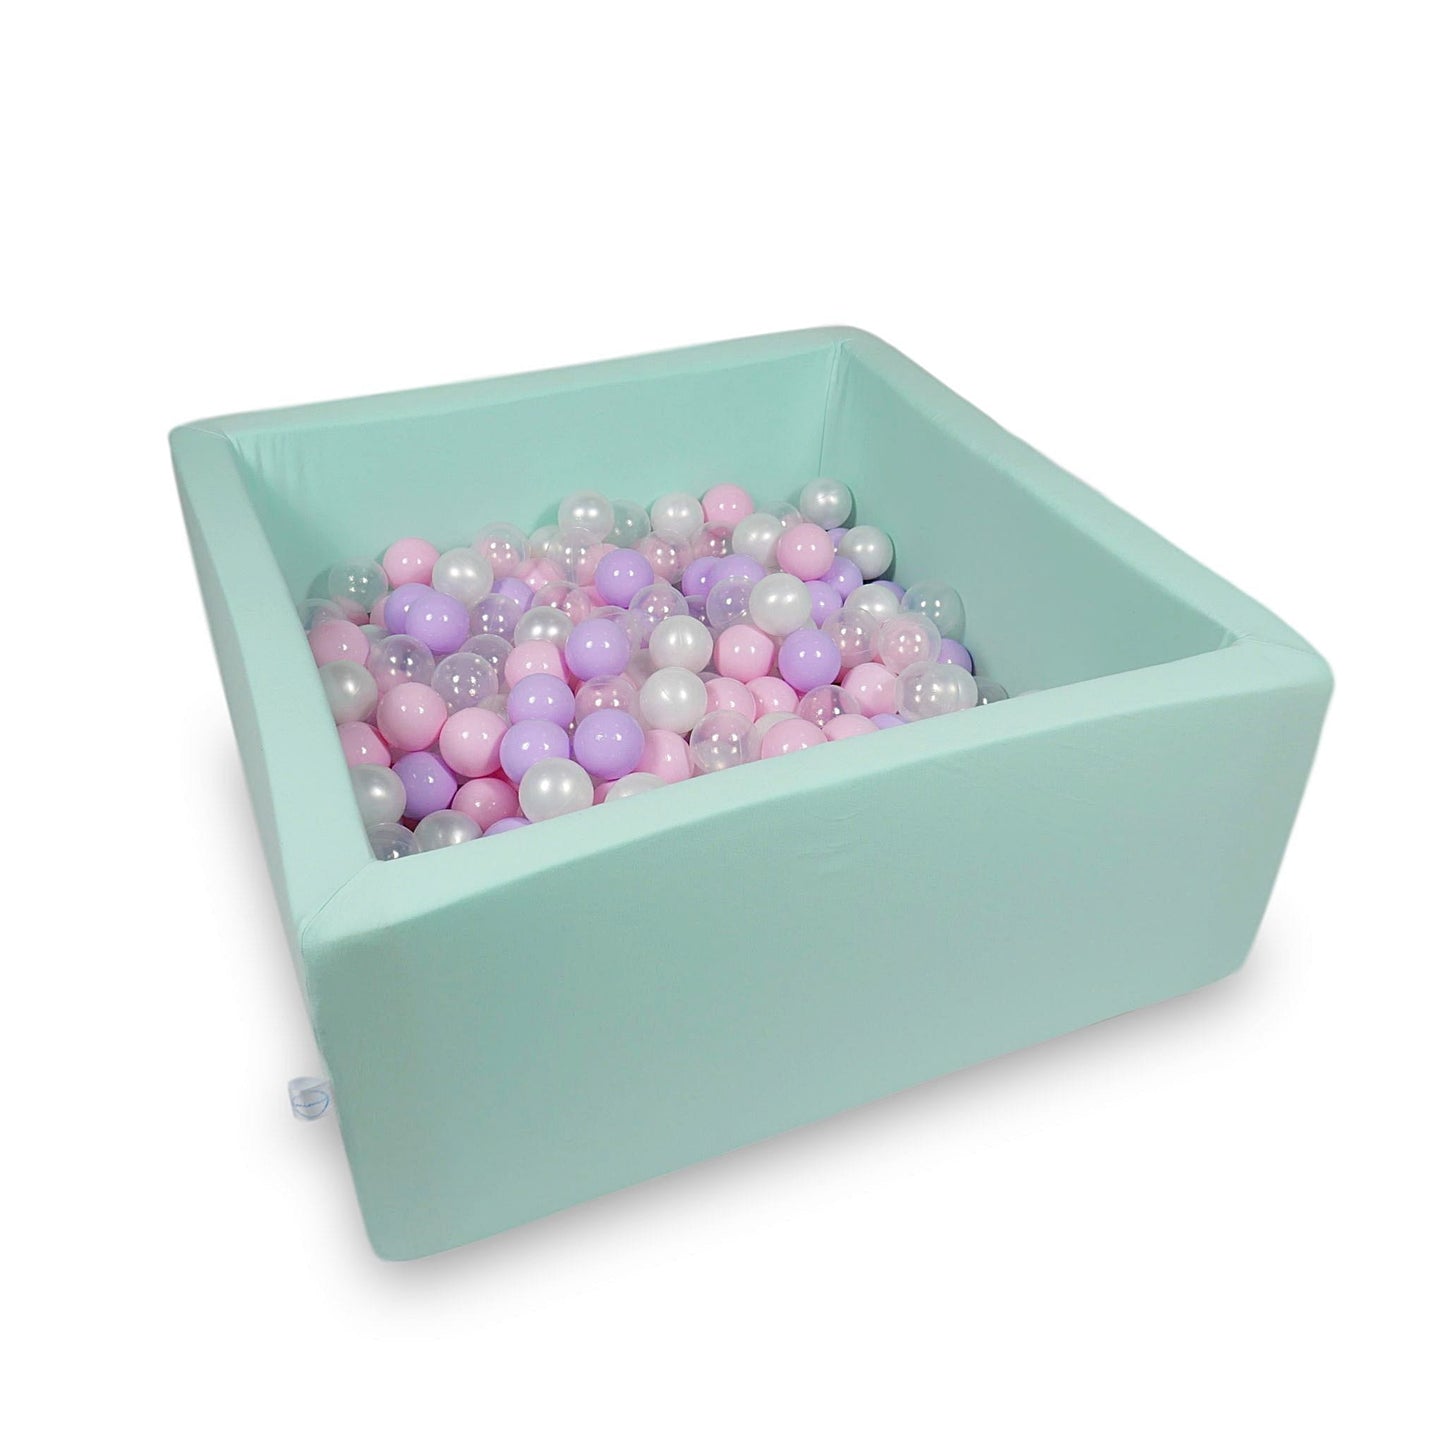 Piscine à Balles 90x90x40cm menthe avec balles 400pcs (rose clair, perle, transparent, bruyère)